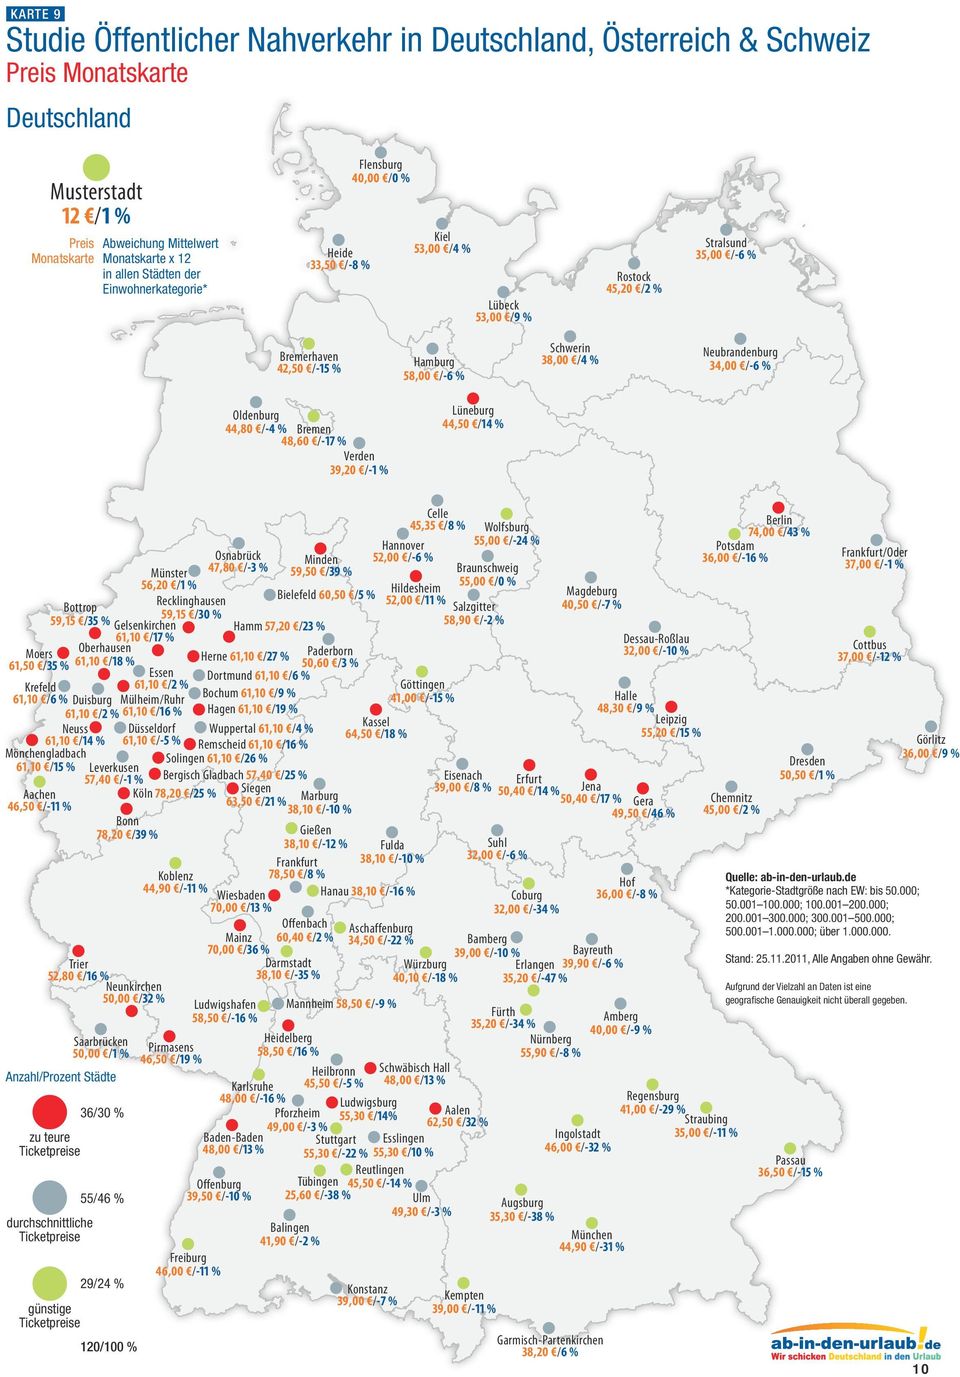 5,80 /16 % Neunkirchen 50,00 / % Saarbrücken 50,00 /1 % Freiburg 6,00 /-11 % Osnabrück 7,80 /- % Offenbach 60,0 / % Mainz 70,00 /6 % Darmstadt 8,10 /-5 % Heidelberg 58,50 /16 % Karlsruhe 8,00 /-16 %